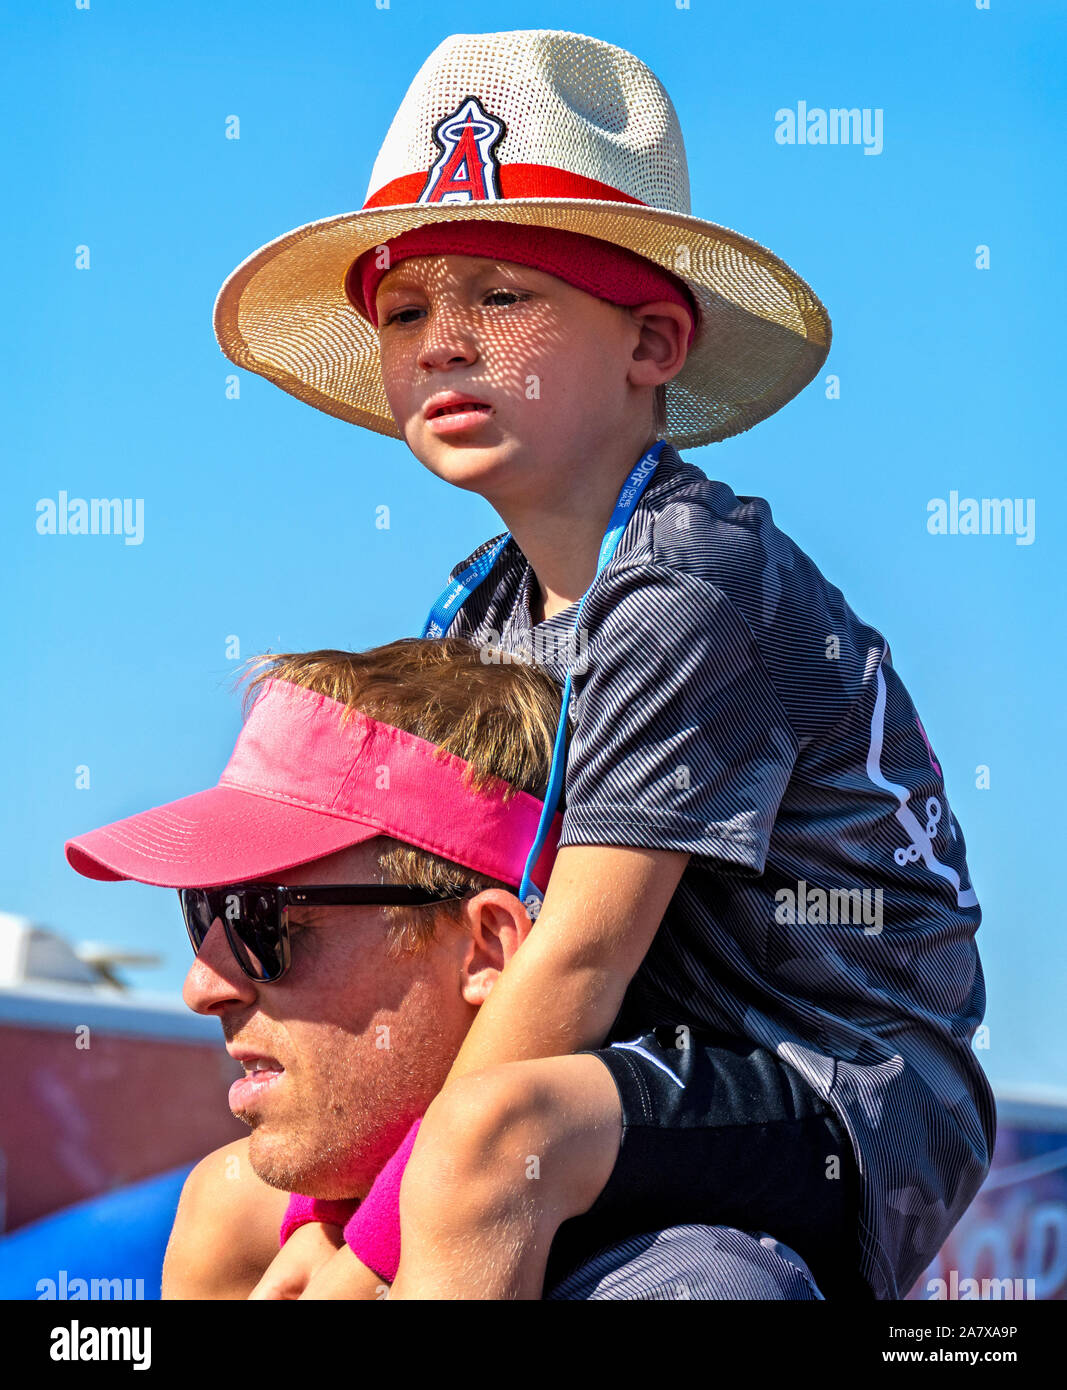 Anaheim, Californie / USA - Nov 3, 2019 : fils wearing hat est assis sur les épaules de son père contre un ciel bleu à la FRDJ 2019 un marche de collecte de fonds. Le diabète de type 1. Banque D'Images